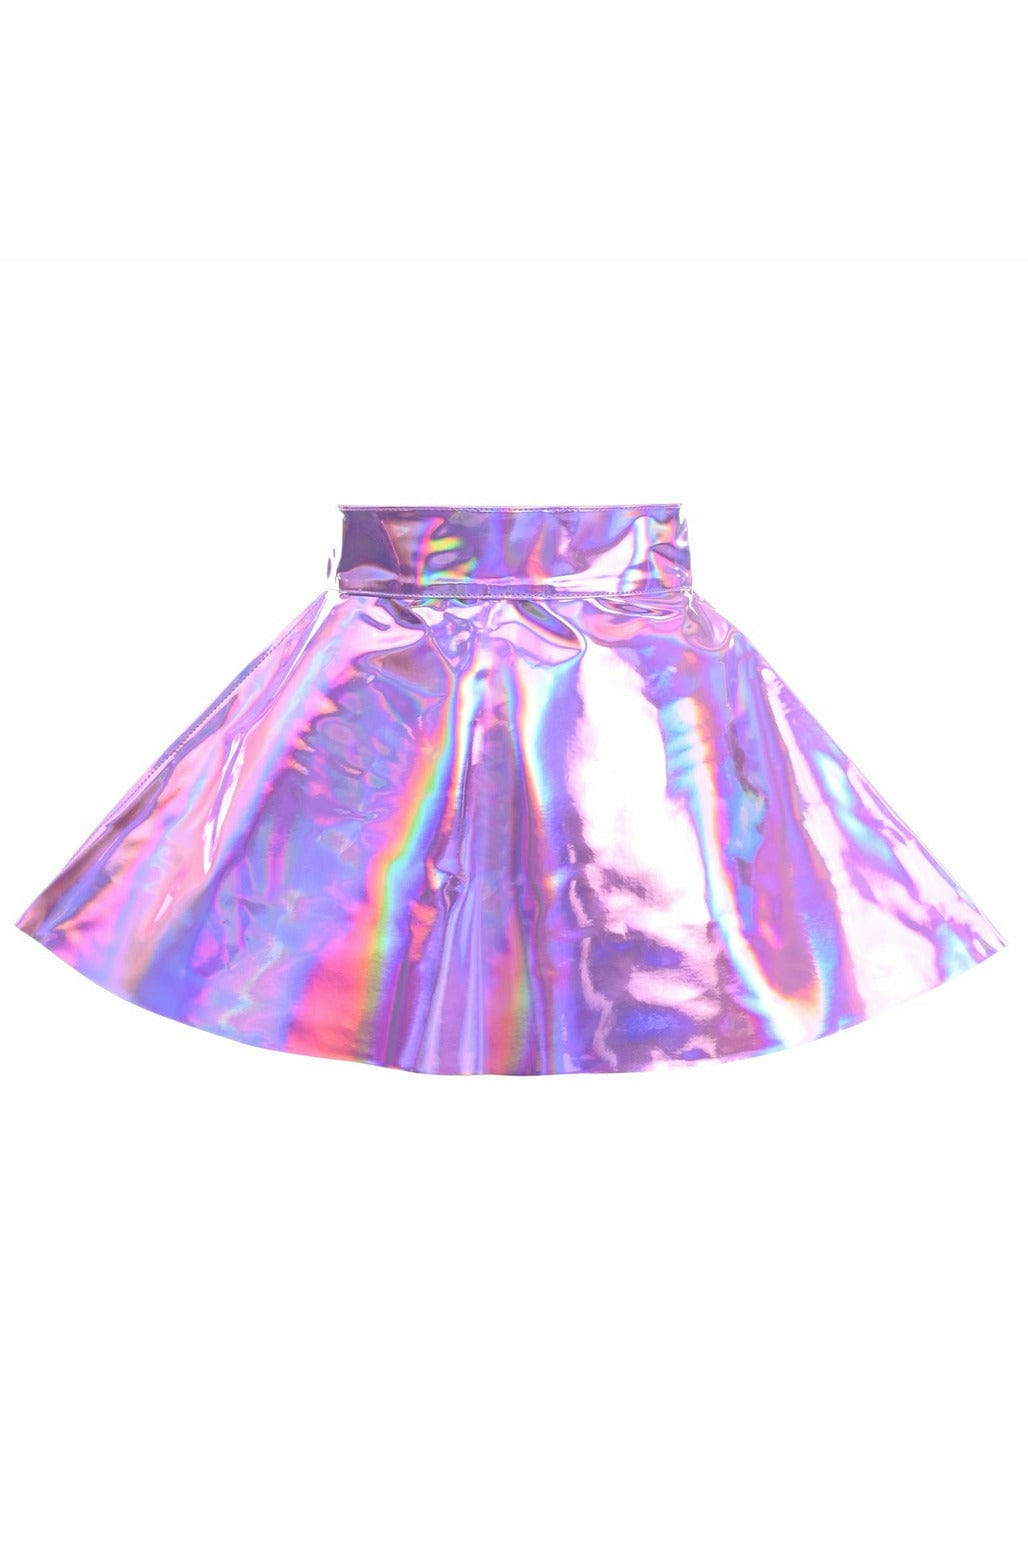 Lavender Hologram Skater Skirt Musotica.com